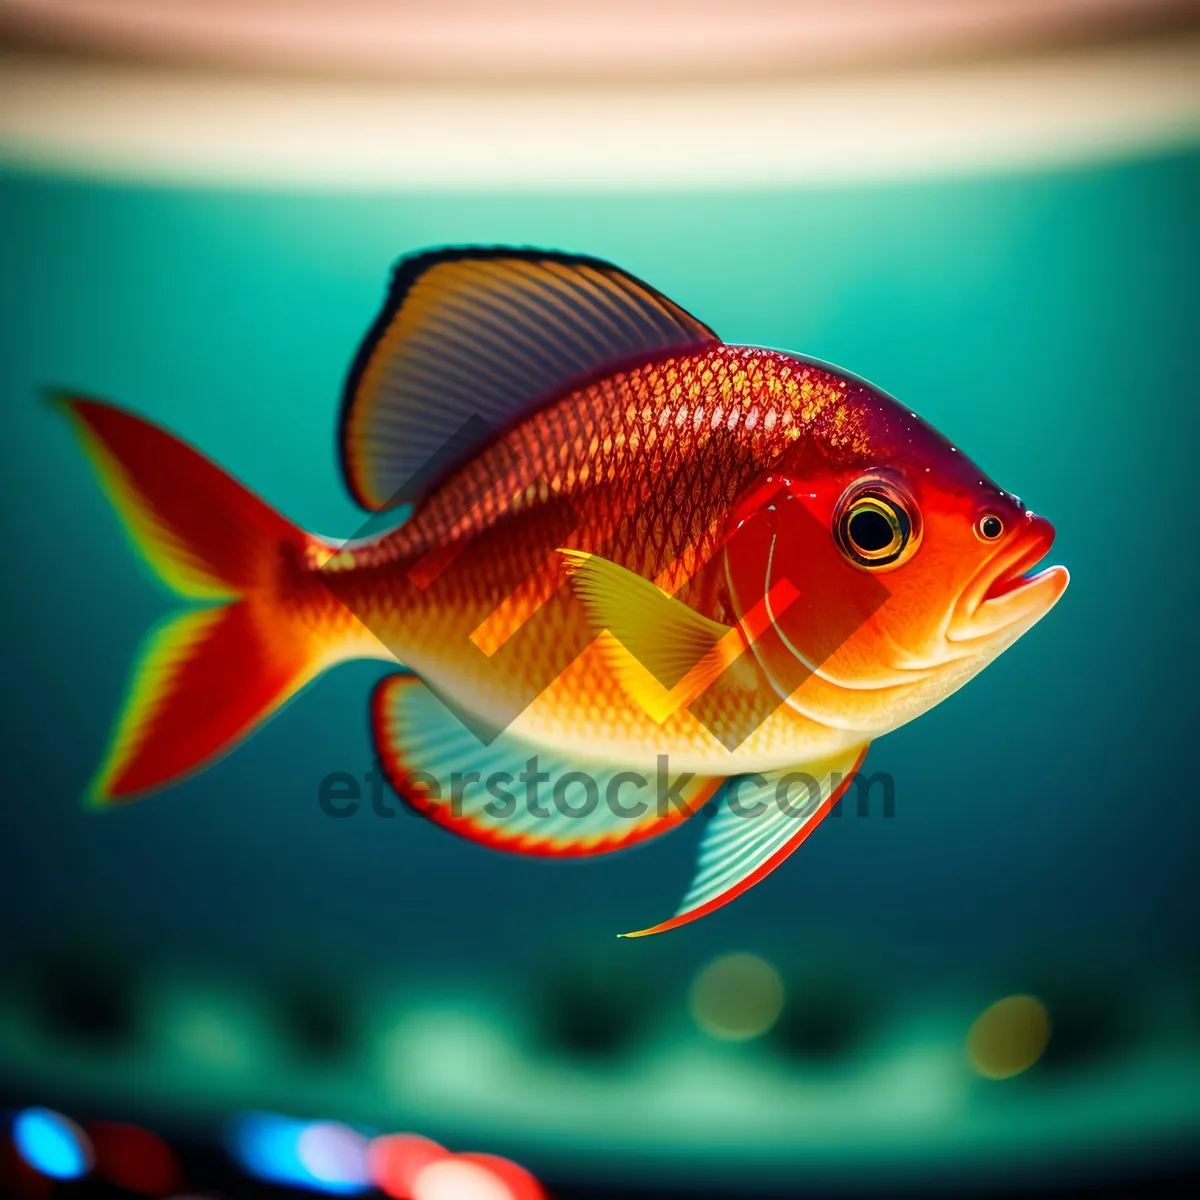 Picture of Vibrant Goldfish Swimming in Aquarium Bowl